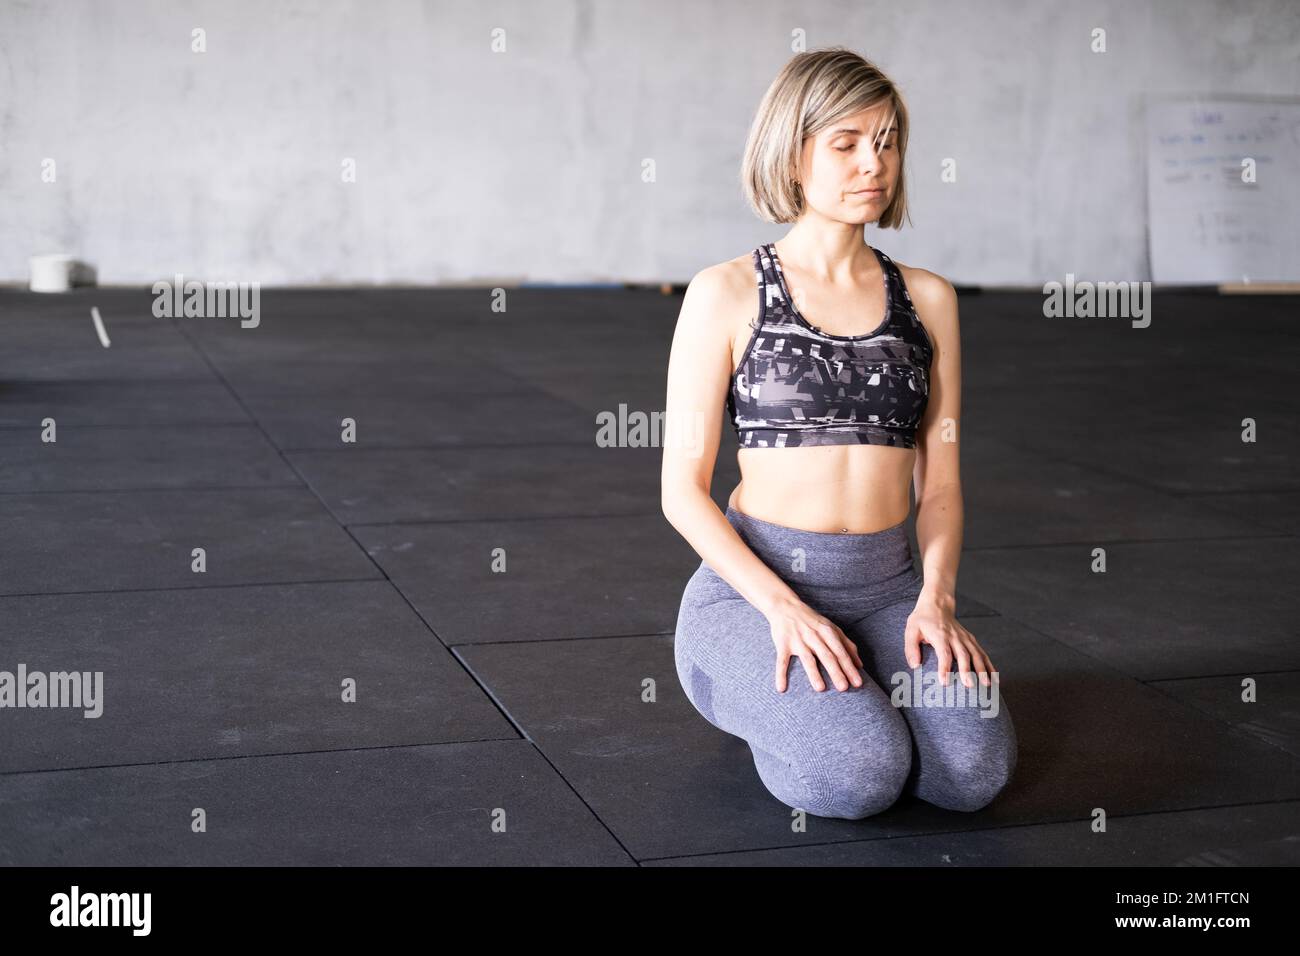 Ganzkörperfoto einer entspannten erwachsenen Frau, die sich im Knien ausruht und meditiert, oder vajrasana-Pose mit geschlossenen Augen während ihres Vinyasa Flow Yoga PR Stockfoto